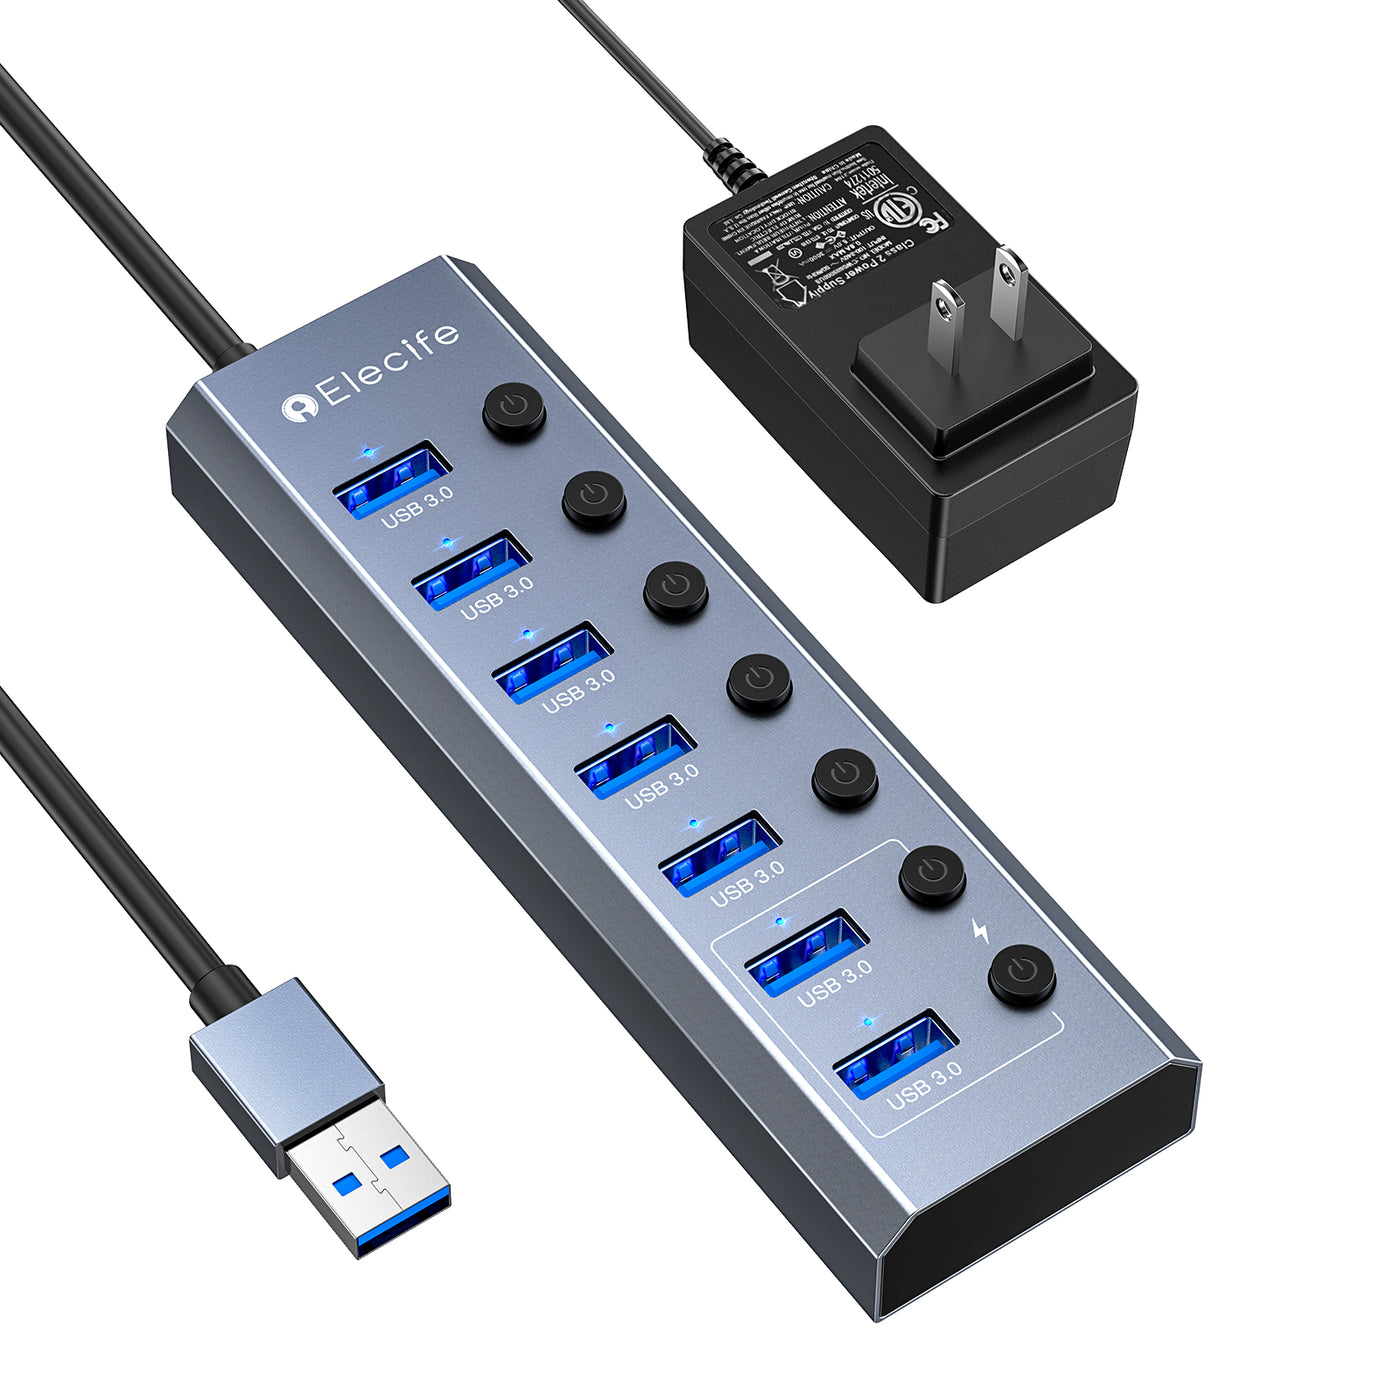 læsning oversøisk træt af Elecife Powered USB 3.0 Hub for laptop, 7-Port USB 3.0 Data Hub – elecife